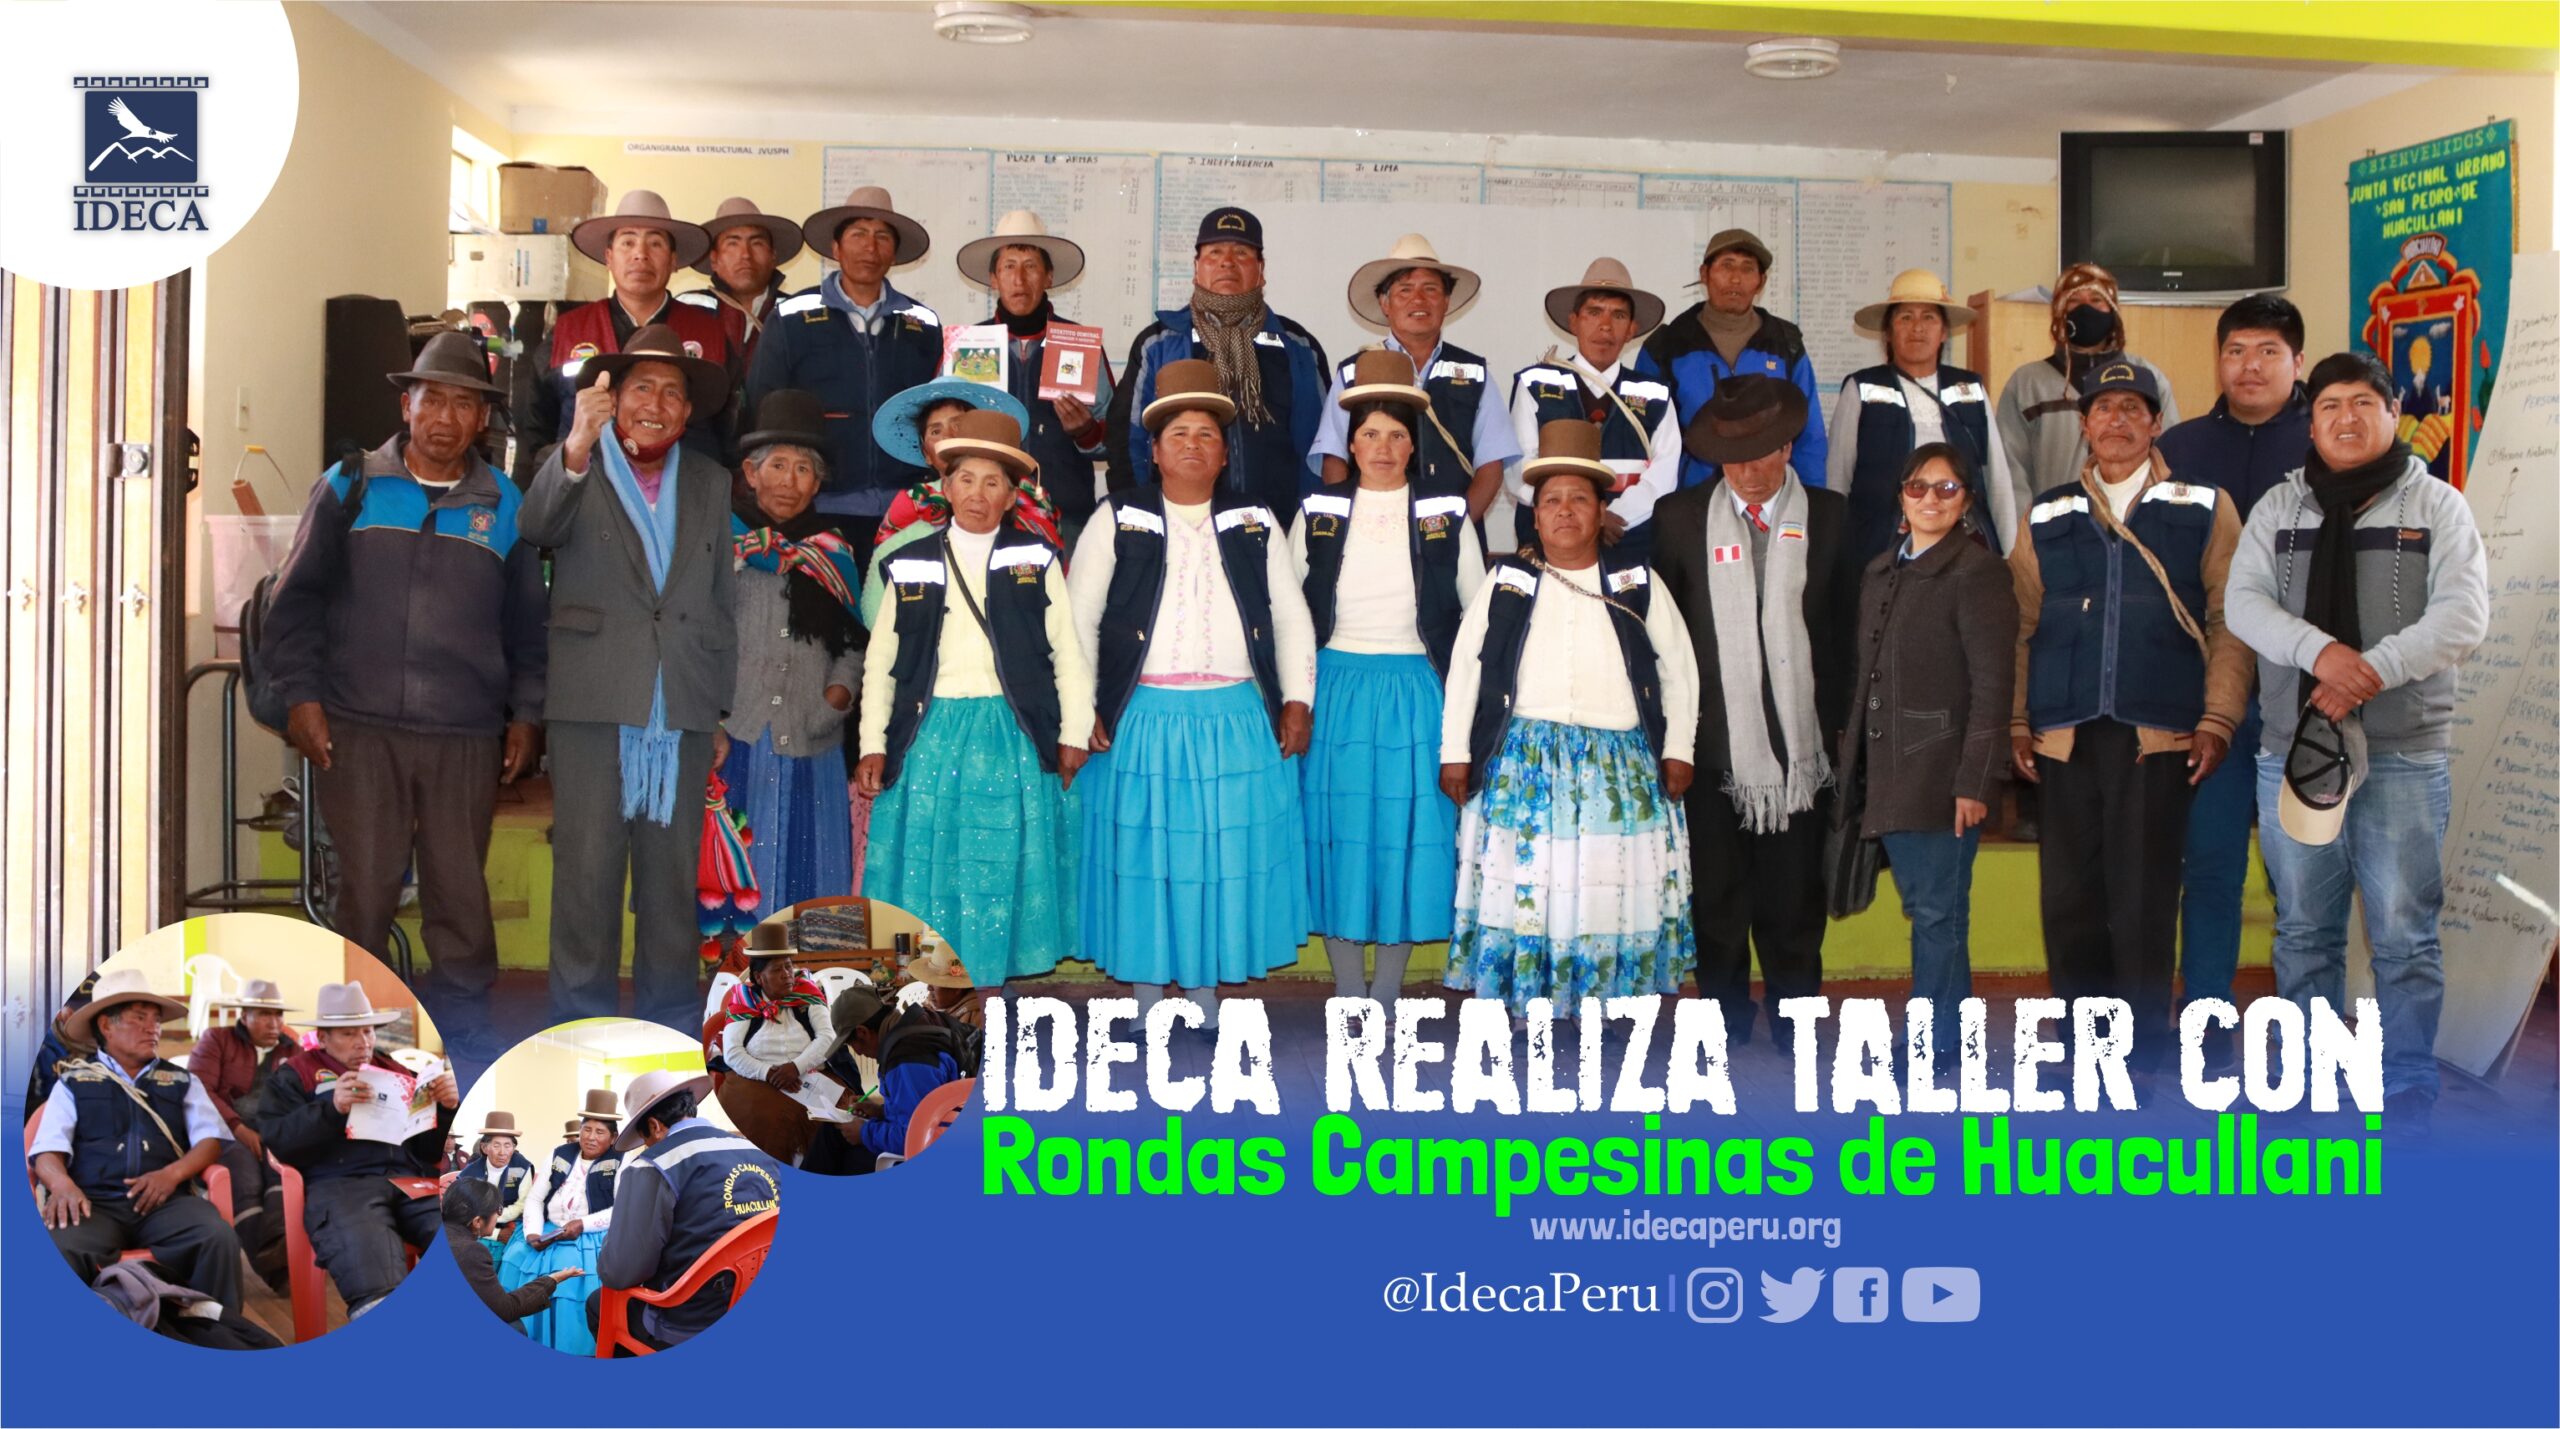 IDECA realiza taller con Rondas Campesinas de Huacullani